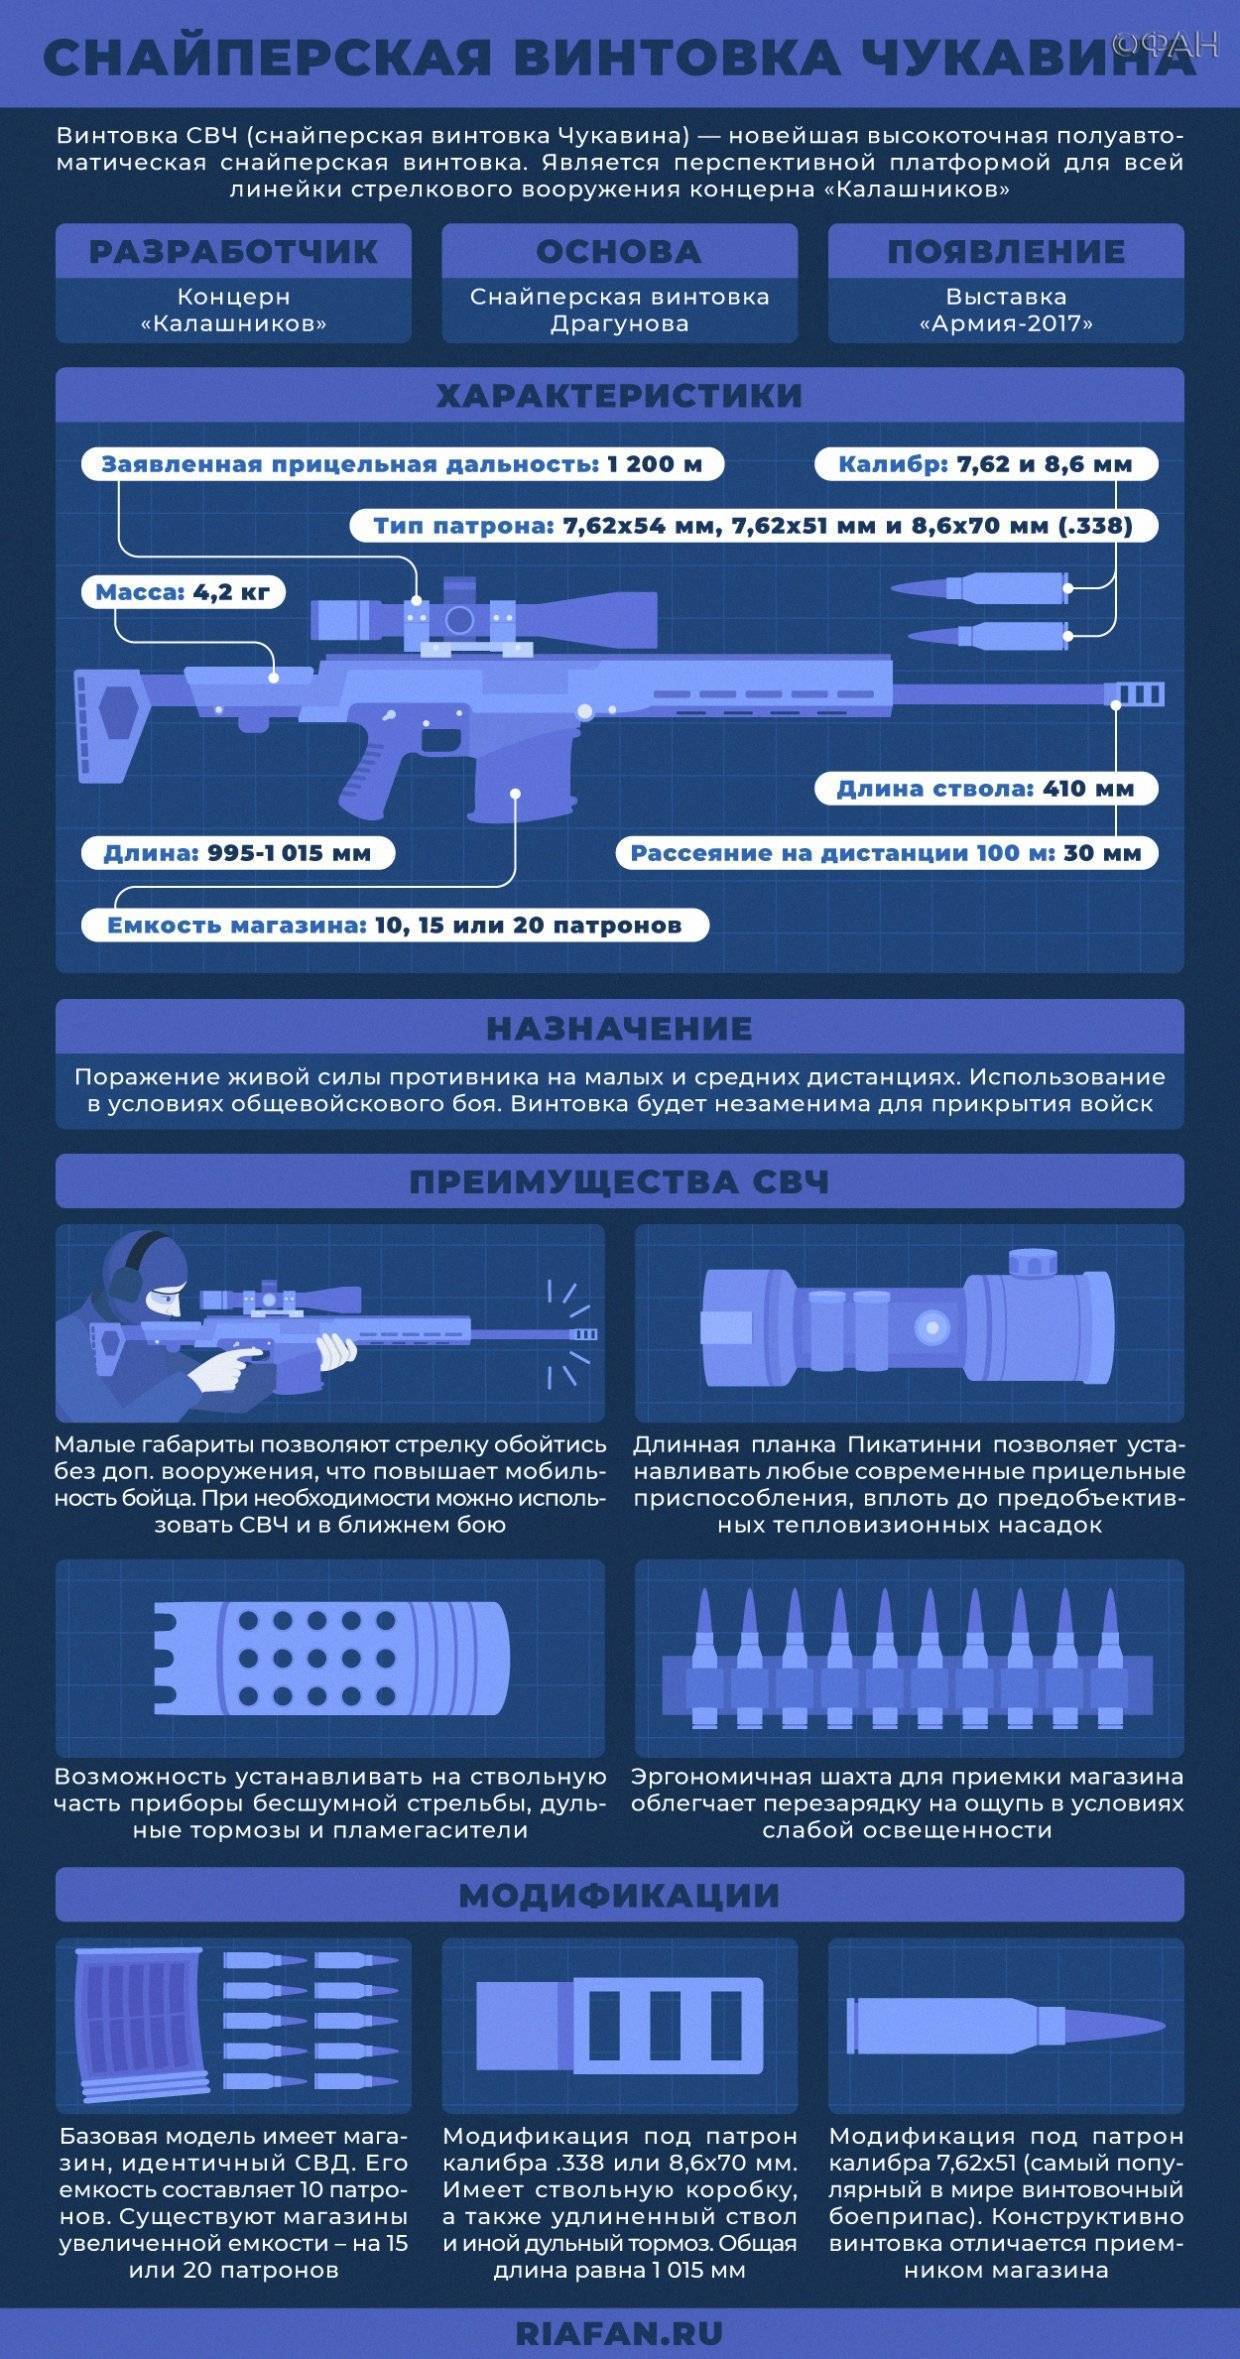 Снайперская винтовка калашникова — википедия